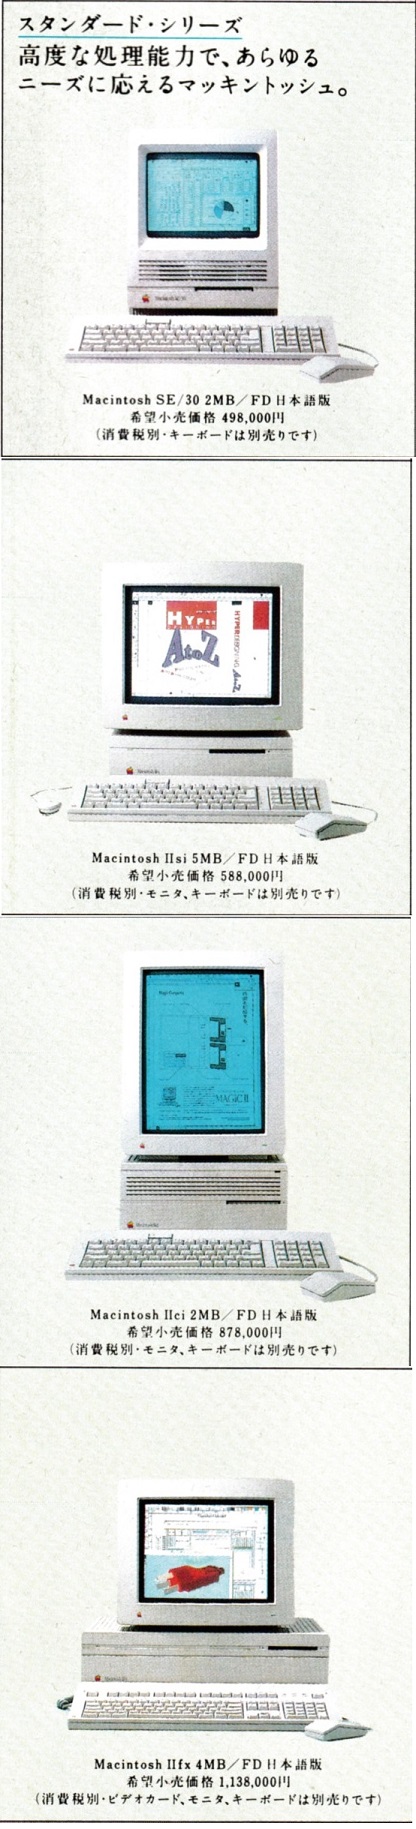 ASCII1991(12)a04Macスタンダード_W416.jpg